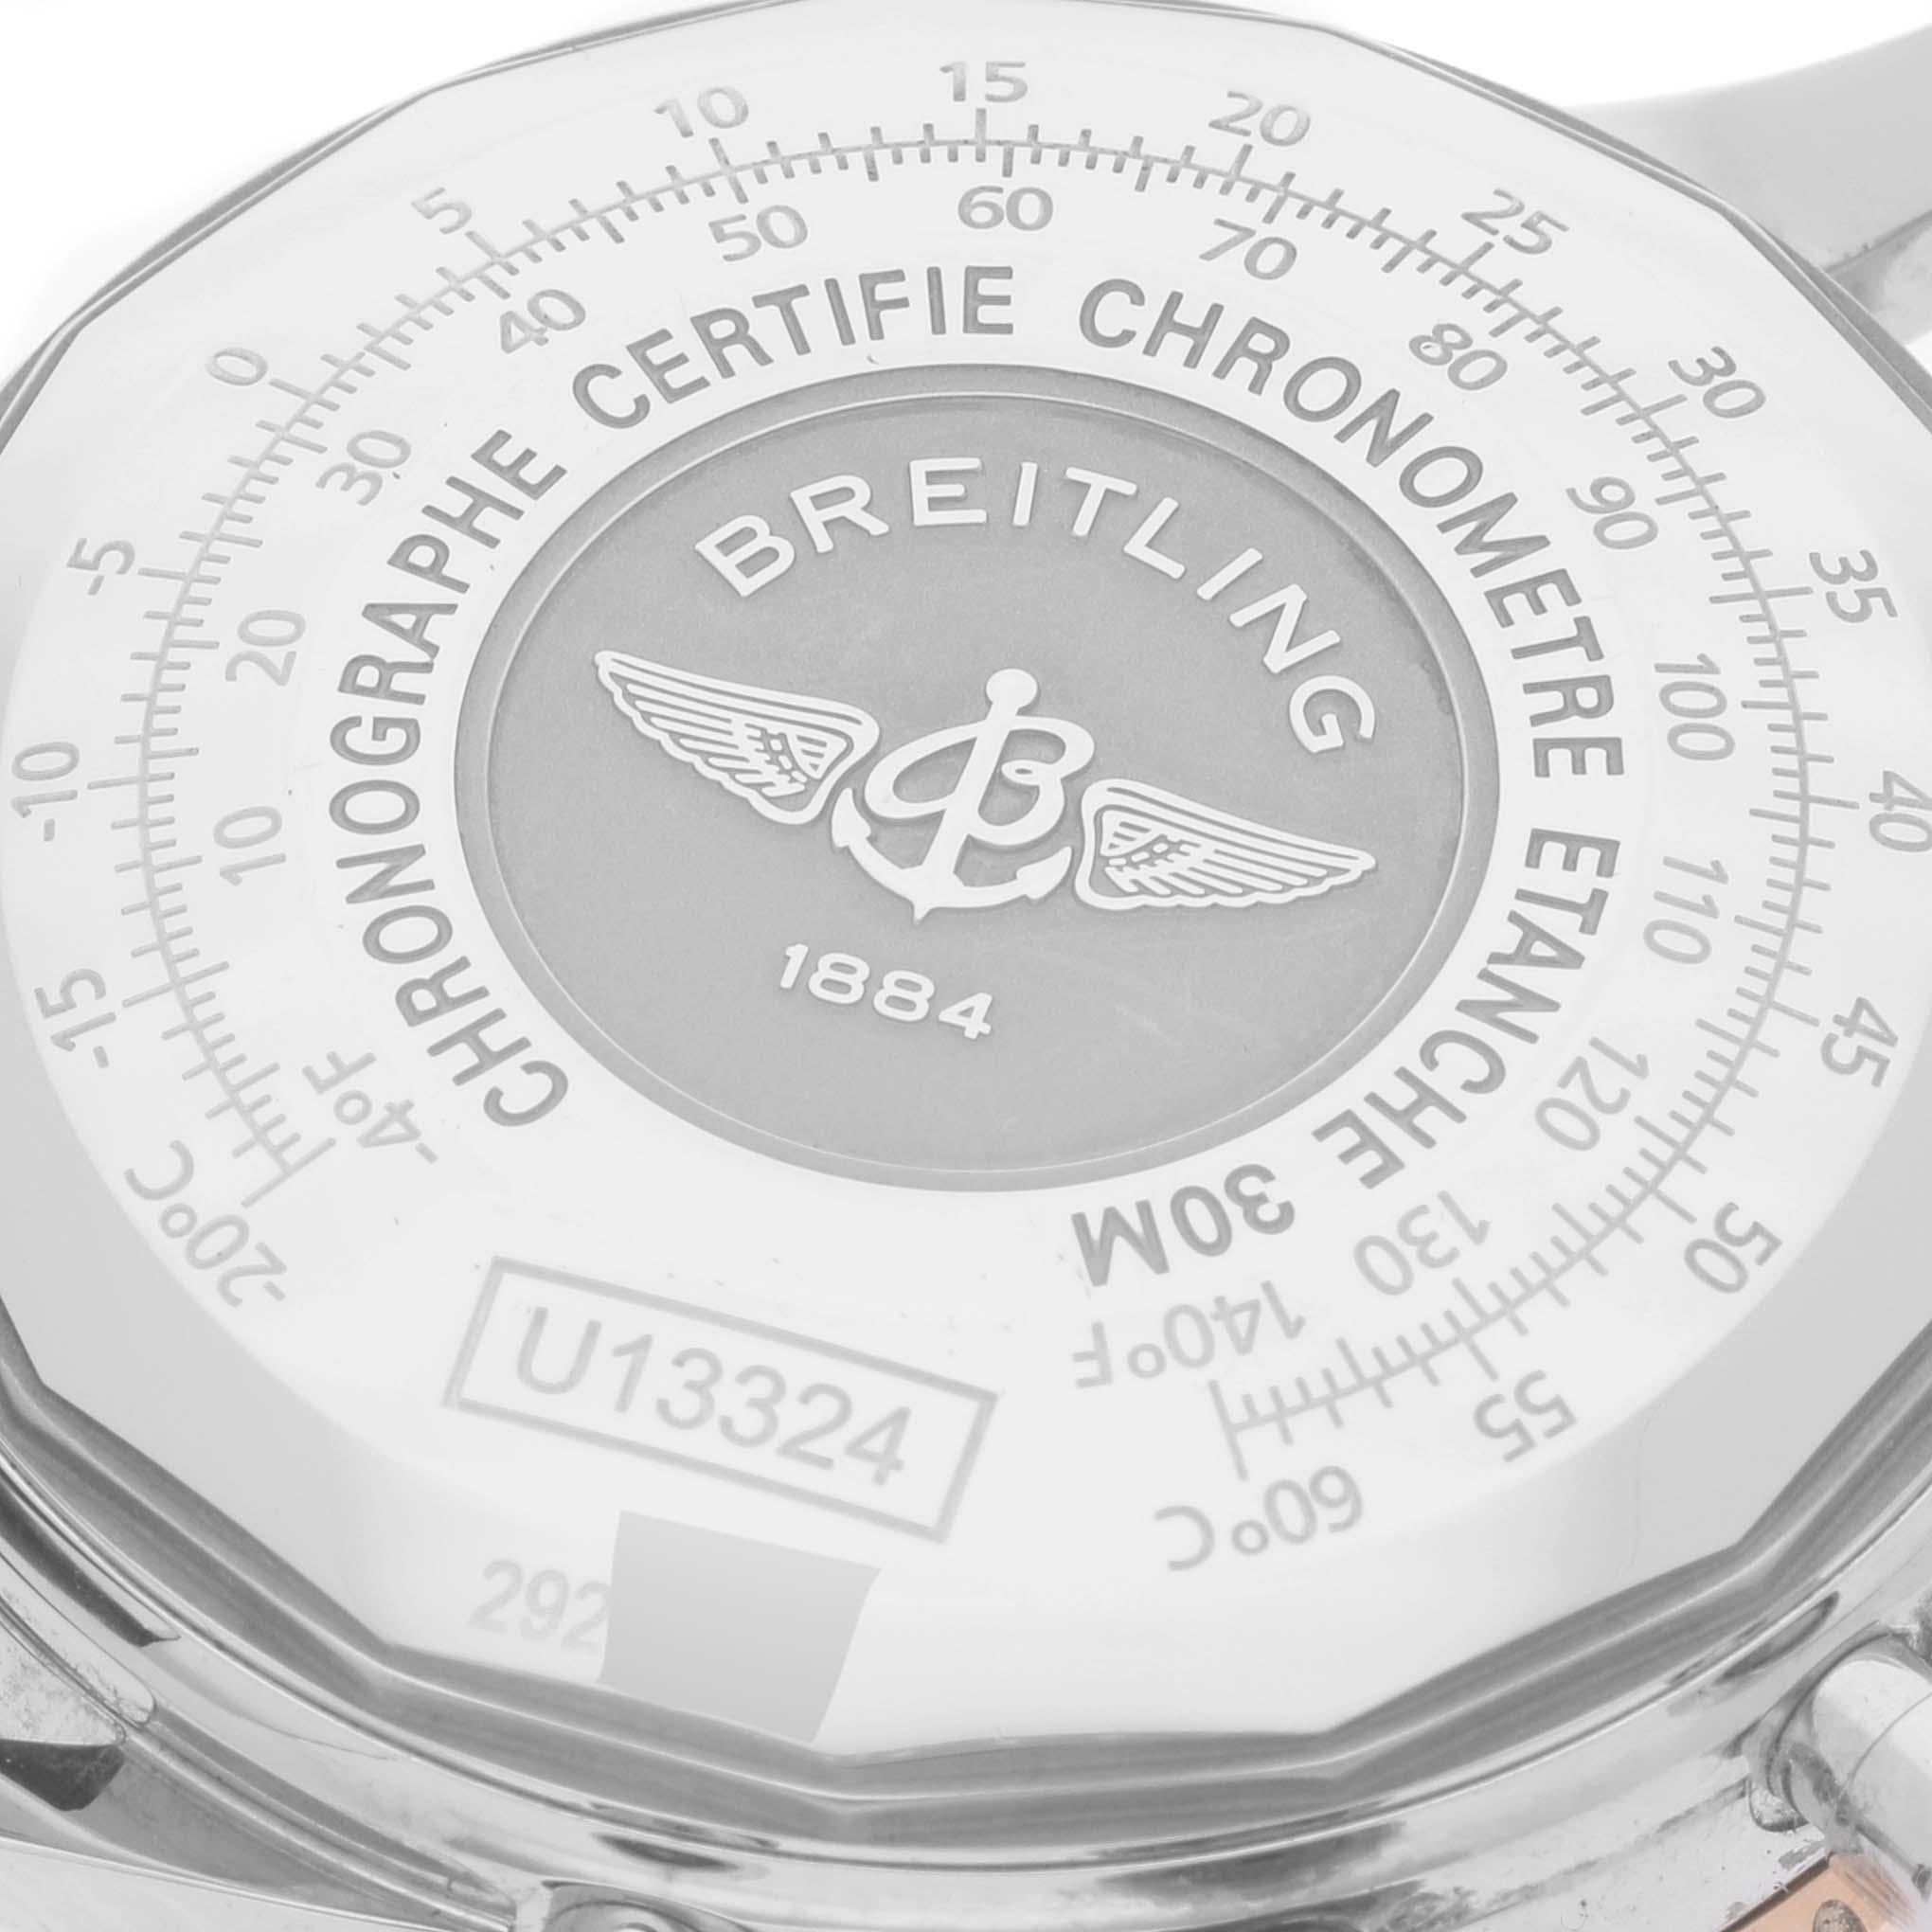 Breitling Navitimer 1 Schwarzes Zifferblatt Stahl Rose Gold Herrenuhr U13324. Automatisches Chronometerwerk mit automatischem Aufzug, offiziell zertifiziert. Chronographen-Funktion. Gehäuse aus Edelstahl mit einem Durchmesser von 41.0 mm.